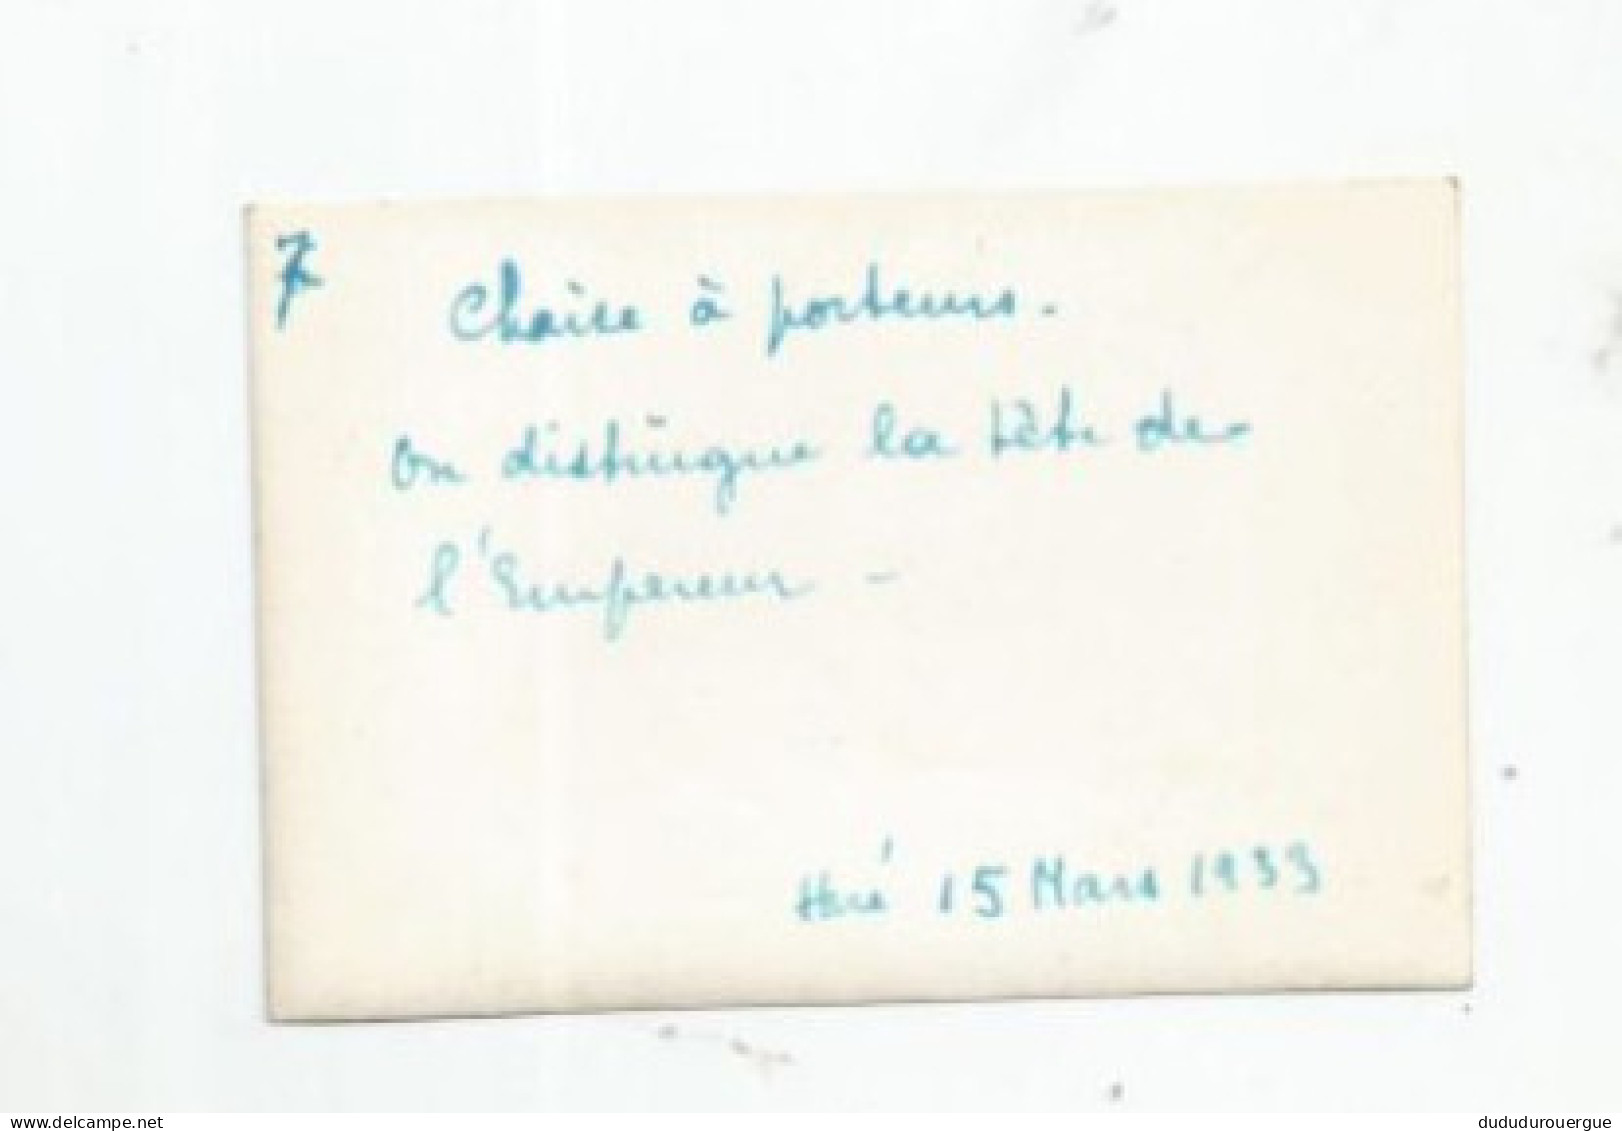 VIETNAM , INDOCHINE , HUE LE 15 MARS 1933 : CHAISE A PORTEURS , ON DISTINGUE LA TETE DE L EMPEREUR - Asien